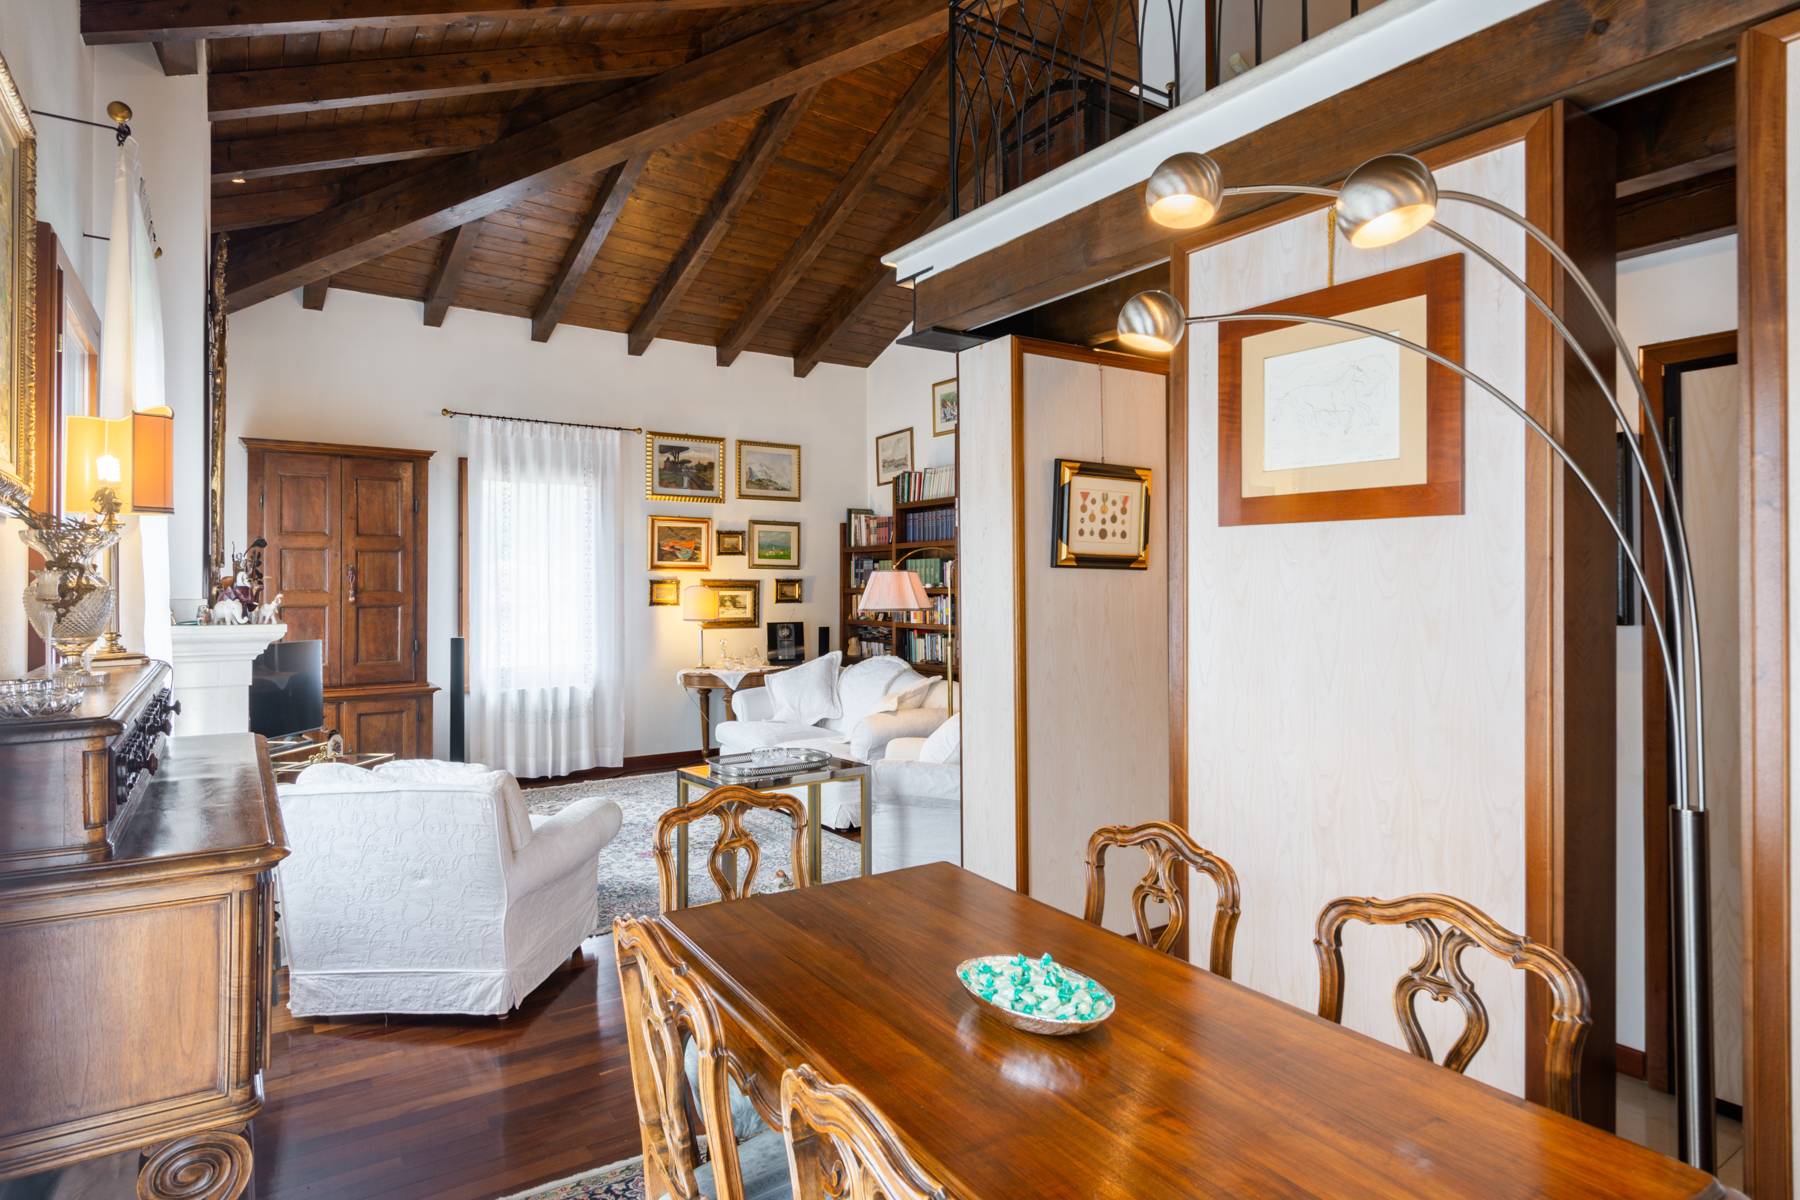 Splendido attico in Villa  a pochi minuti dal centro storico di Verona - 3